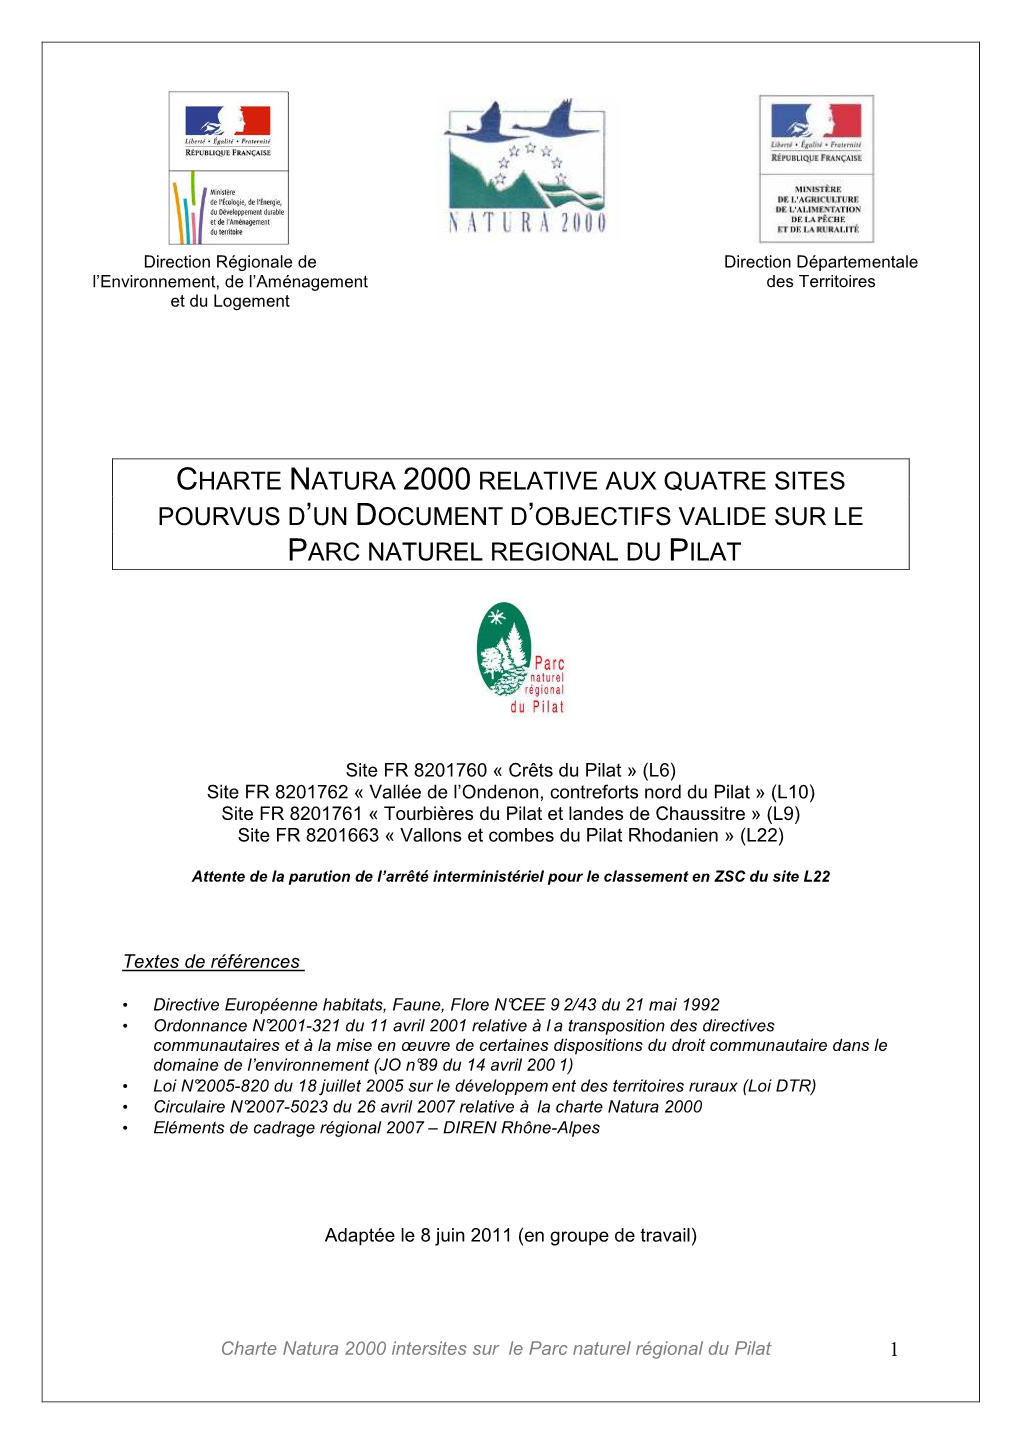 Charte Natura 2000 Relative Aux Quatre Sites Pourvus D ’Un Document D ’Objectifs Valide Sur Le Parc Naturel Regional Du Pilat